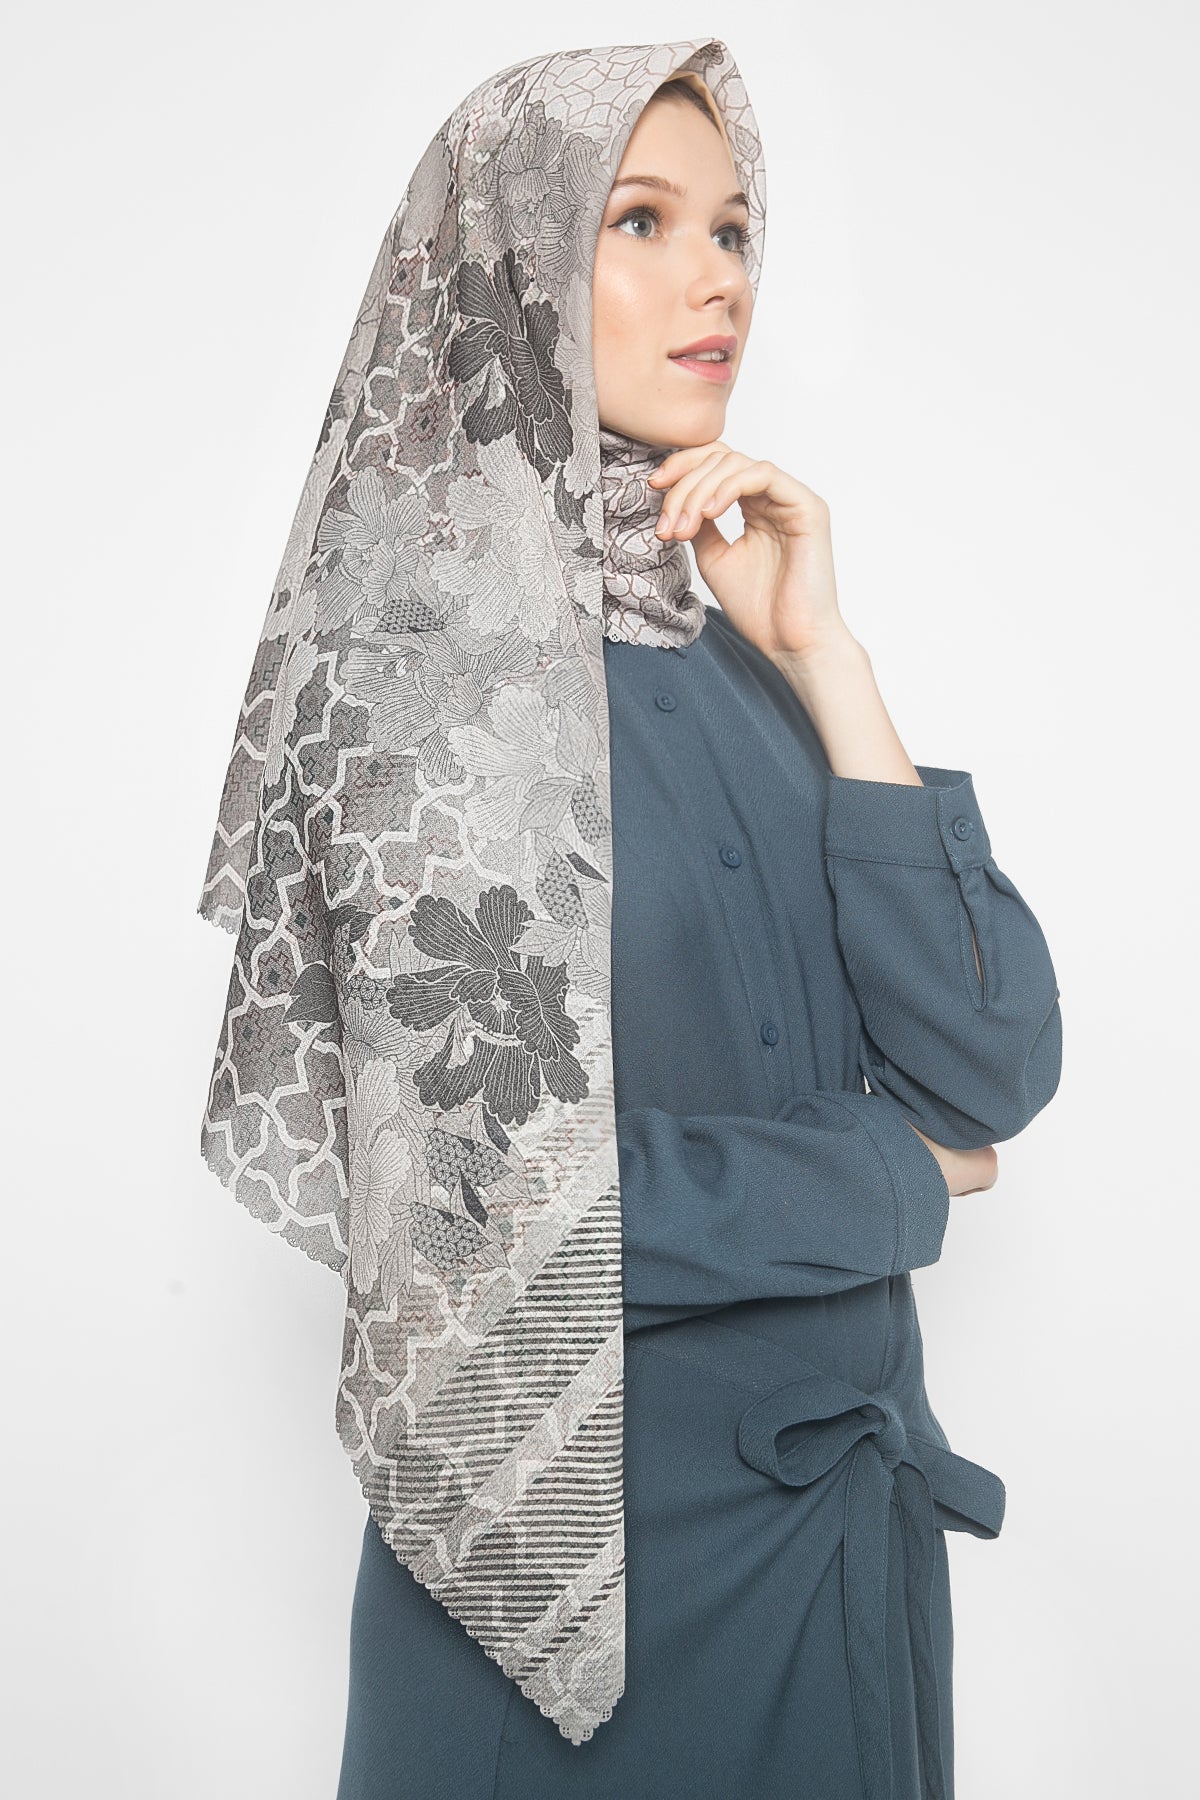 Sloane Scarf by MYVB x ISLA Eid Series '20